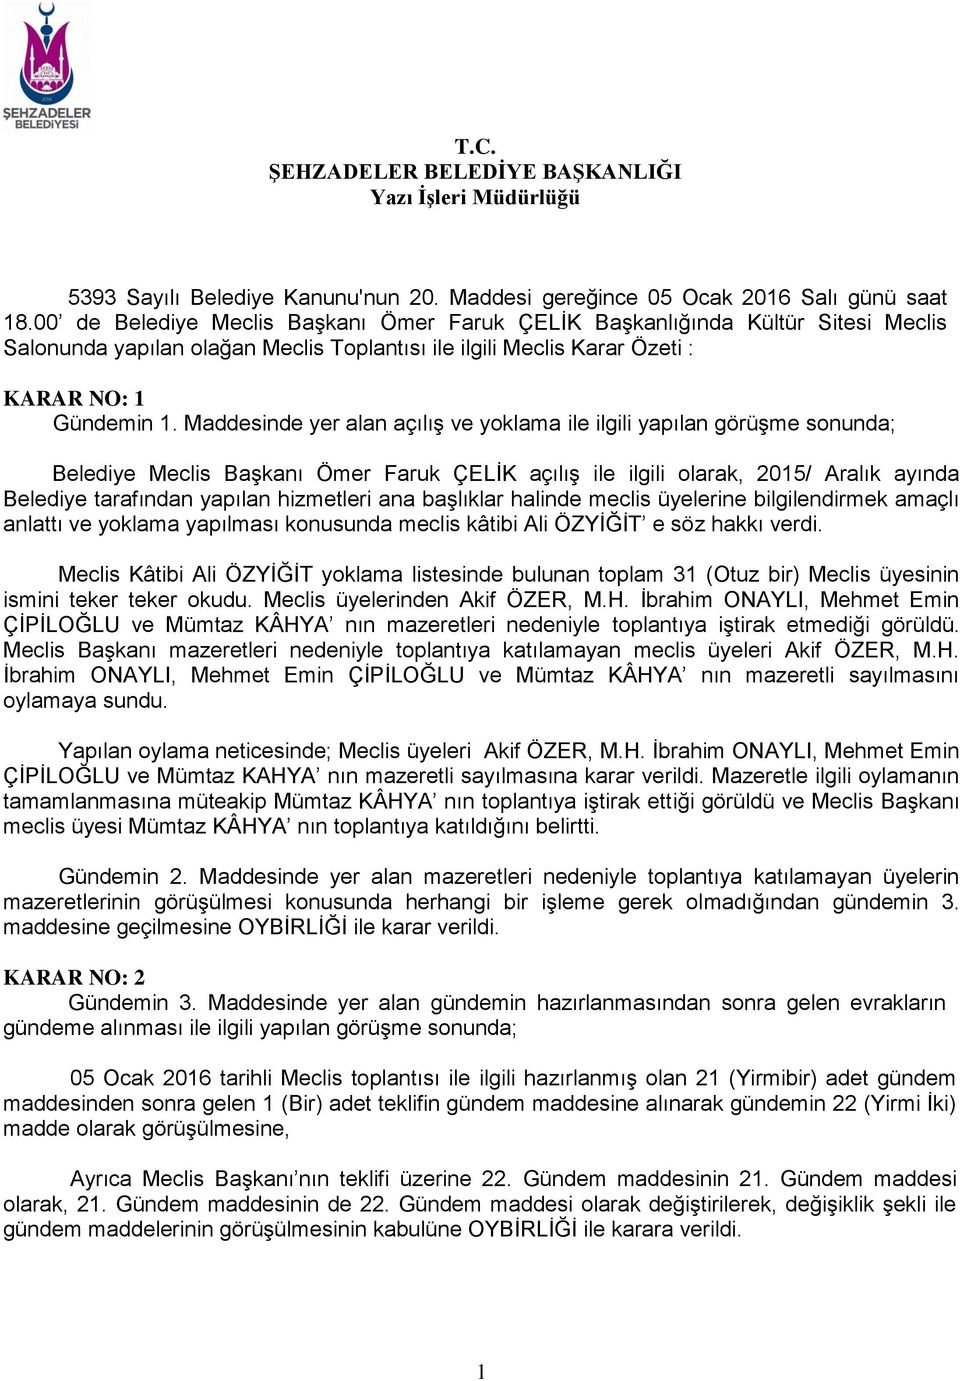 Maddesinde yer alan açılış ve yoklama Belediye Meclis Başkanı Ömer Faruk ÇELİK açılış ile ilgili olarak, 2015/ Aralık ayında Belediye tarafından yapılan hizmetleri ana başlıklar halinde meclis